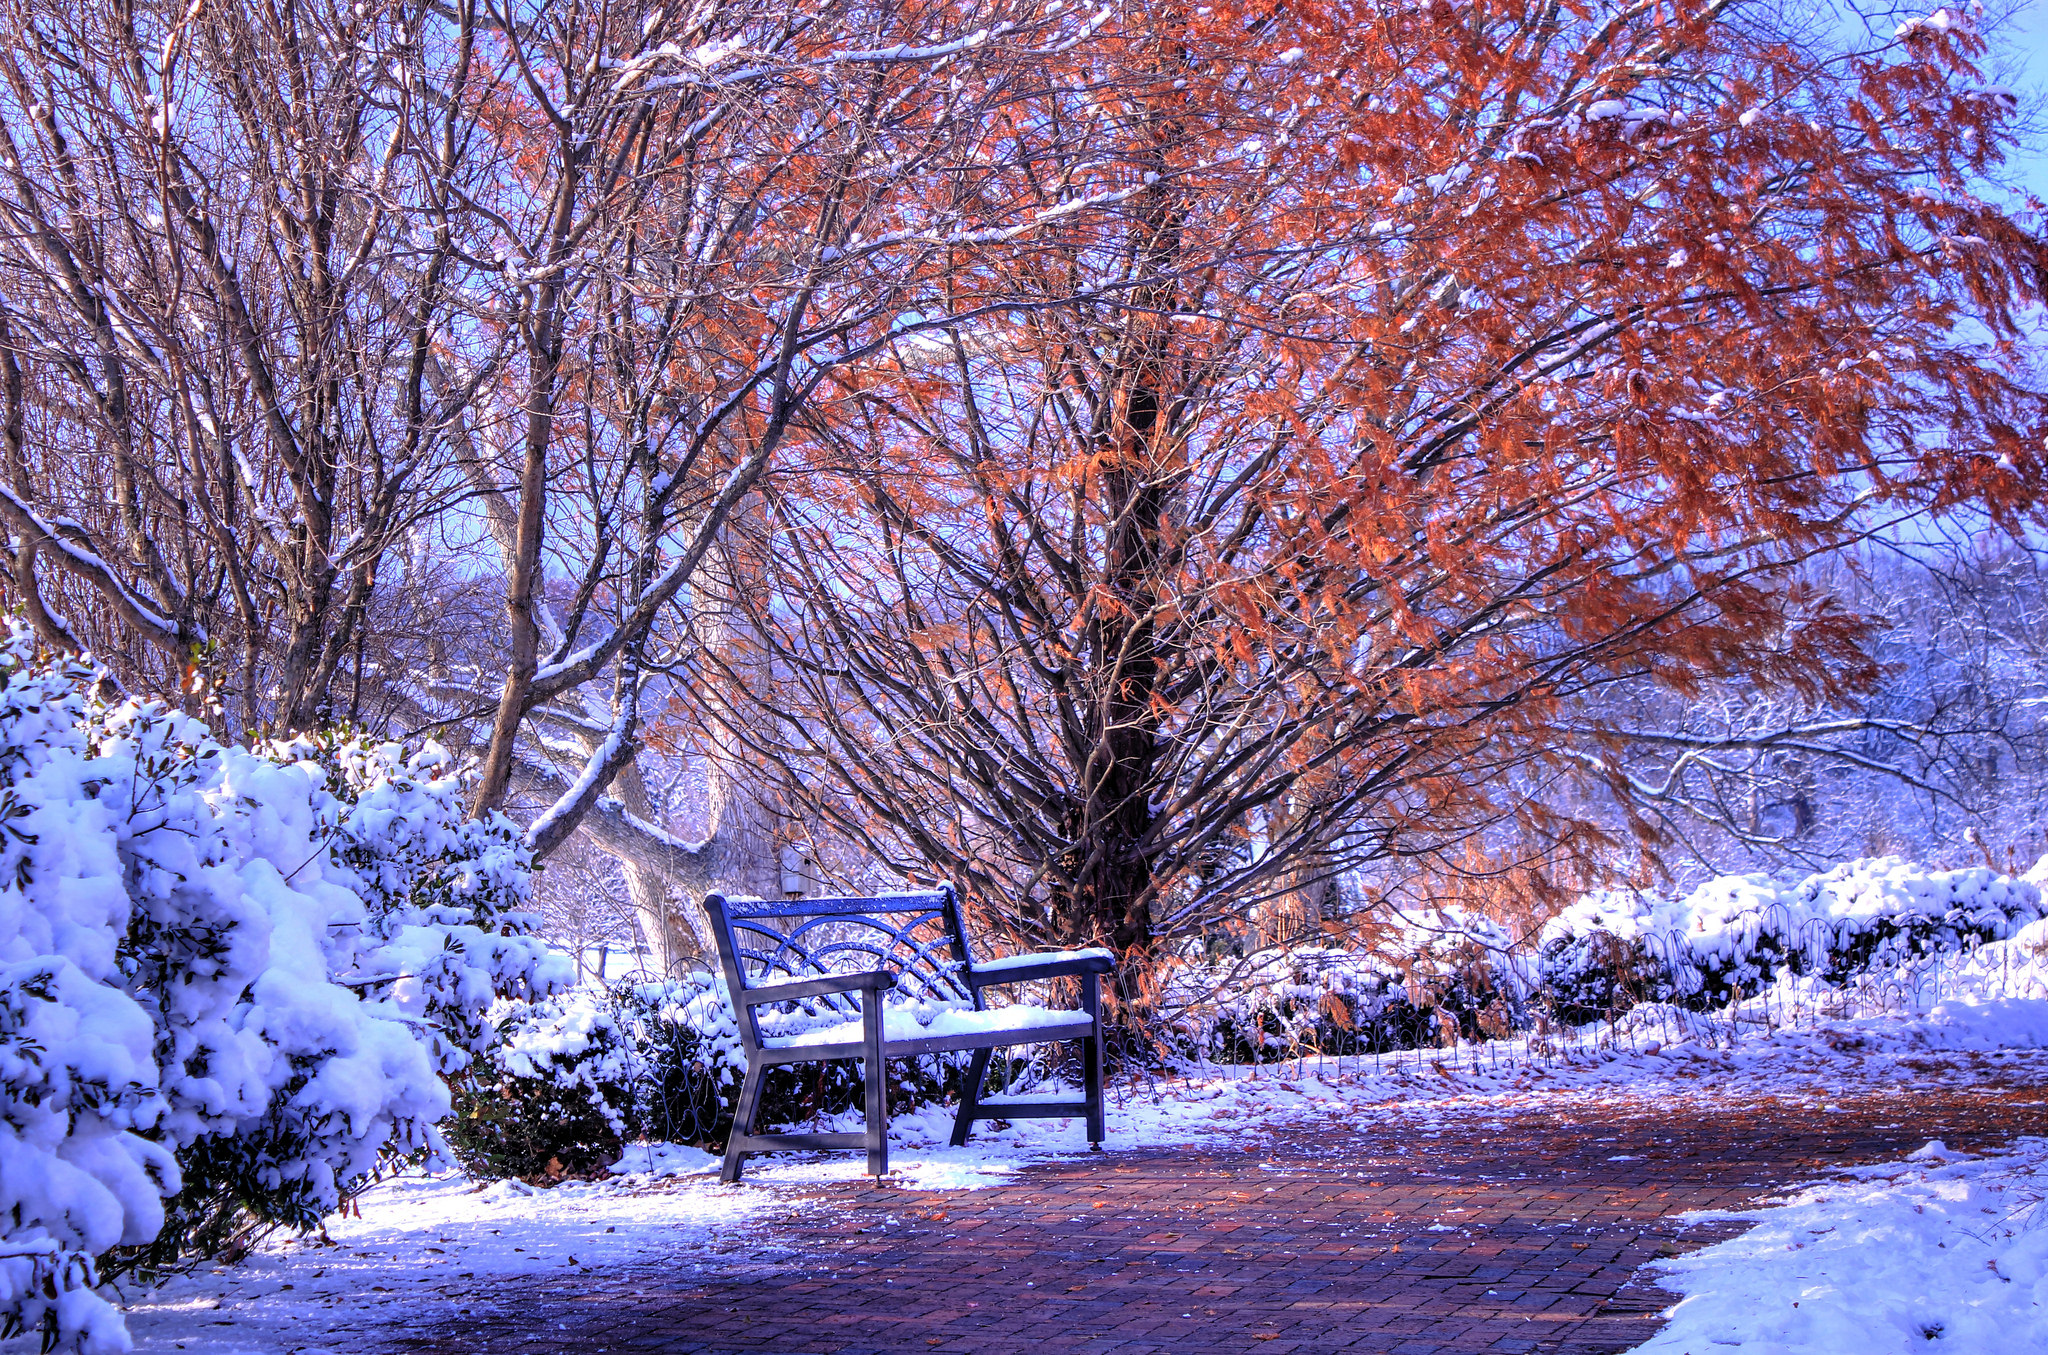 Скачать обои бесплатно Осень, Снег, Дерево, Скамья, Сделано Человеком картинка на рабочий стол ПК